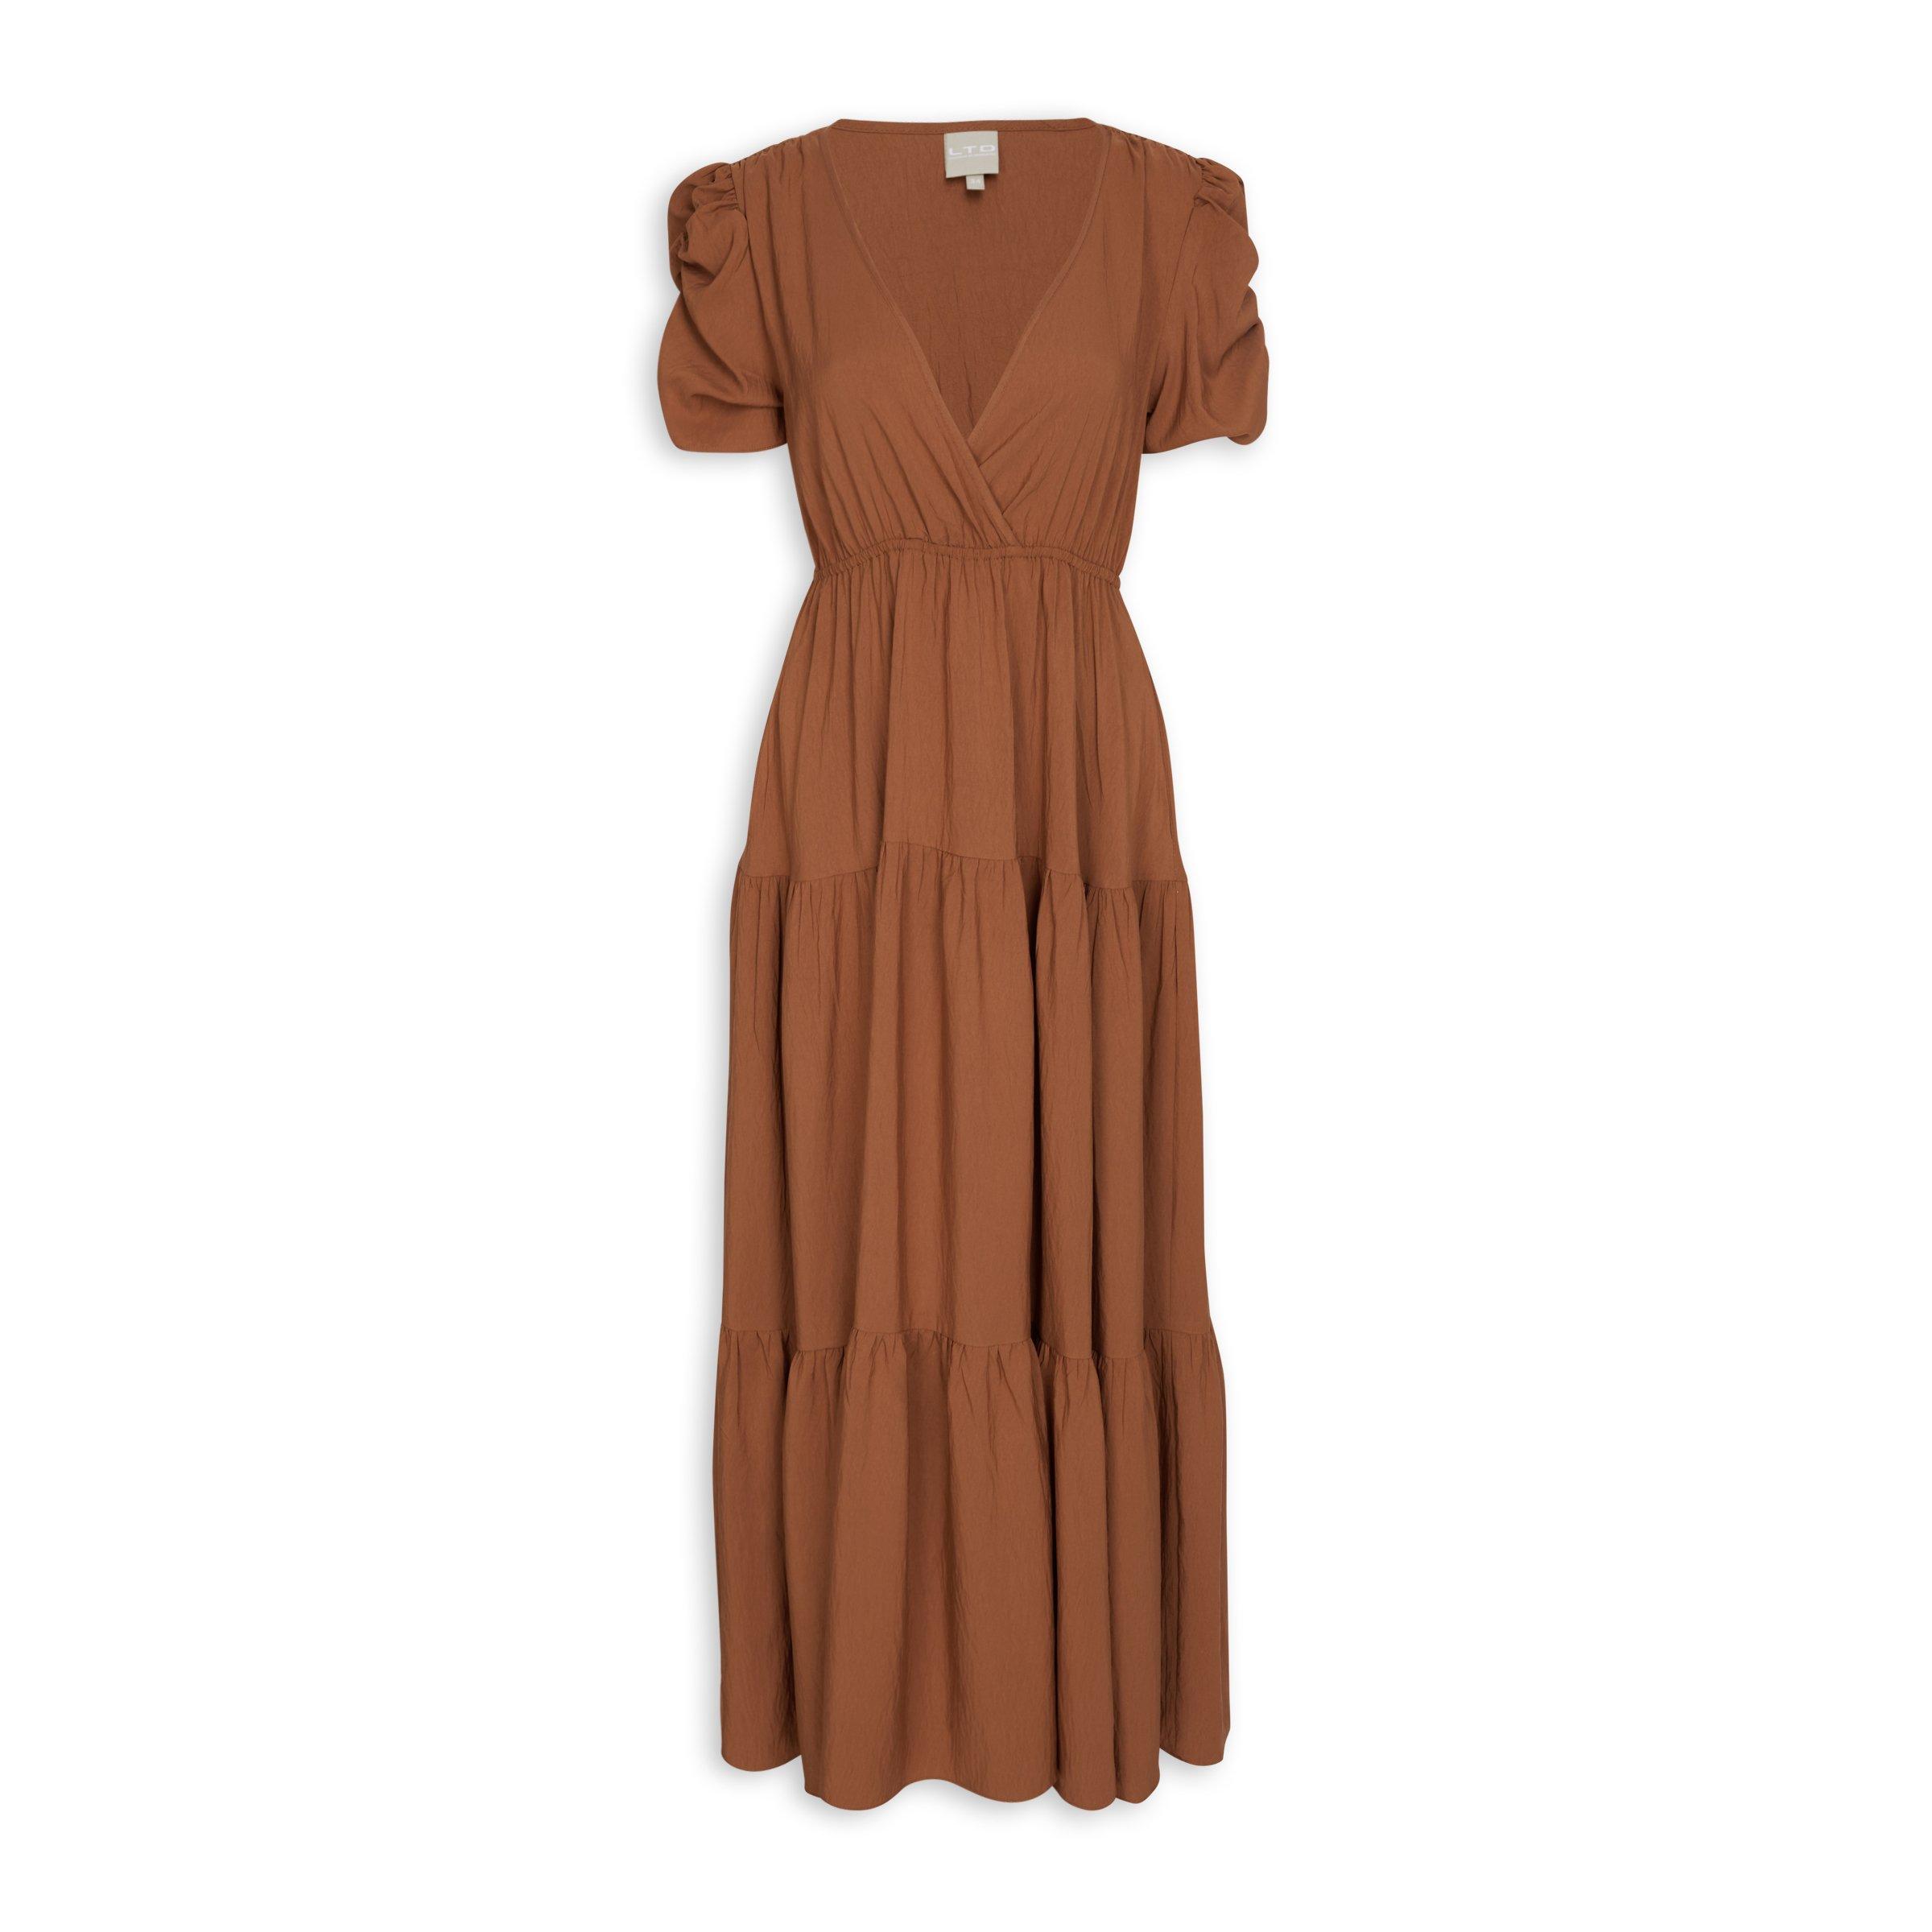 LTD Woman Camel Maxi Dress (3076720) | Truworths.co.za